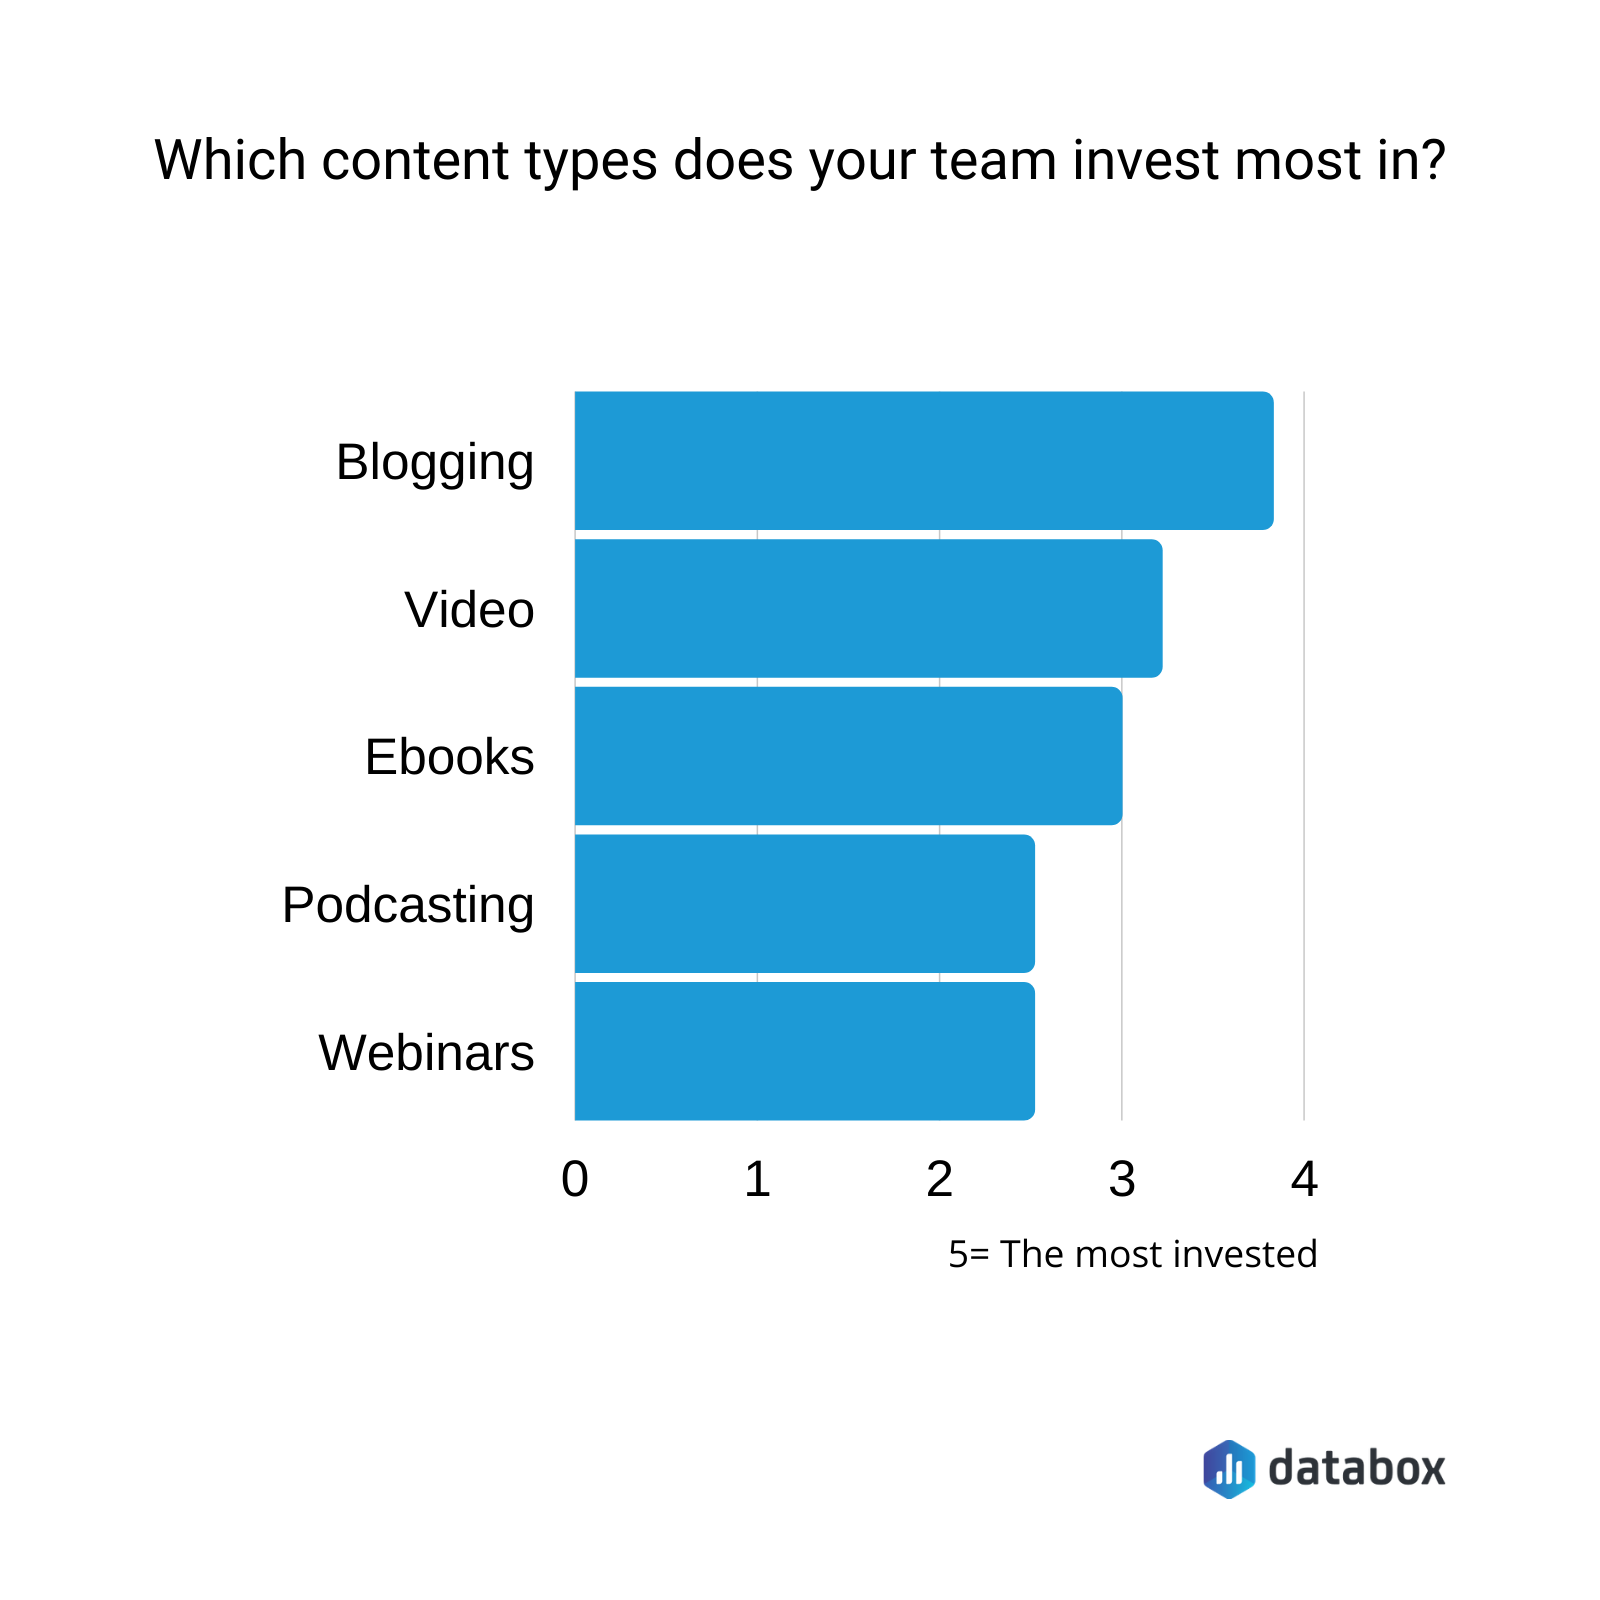 ما نوع المحتوى الذي يستثمر فيه فريقك أكثر؟